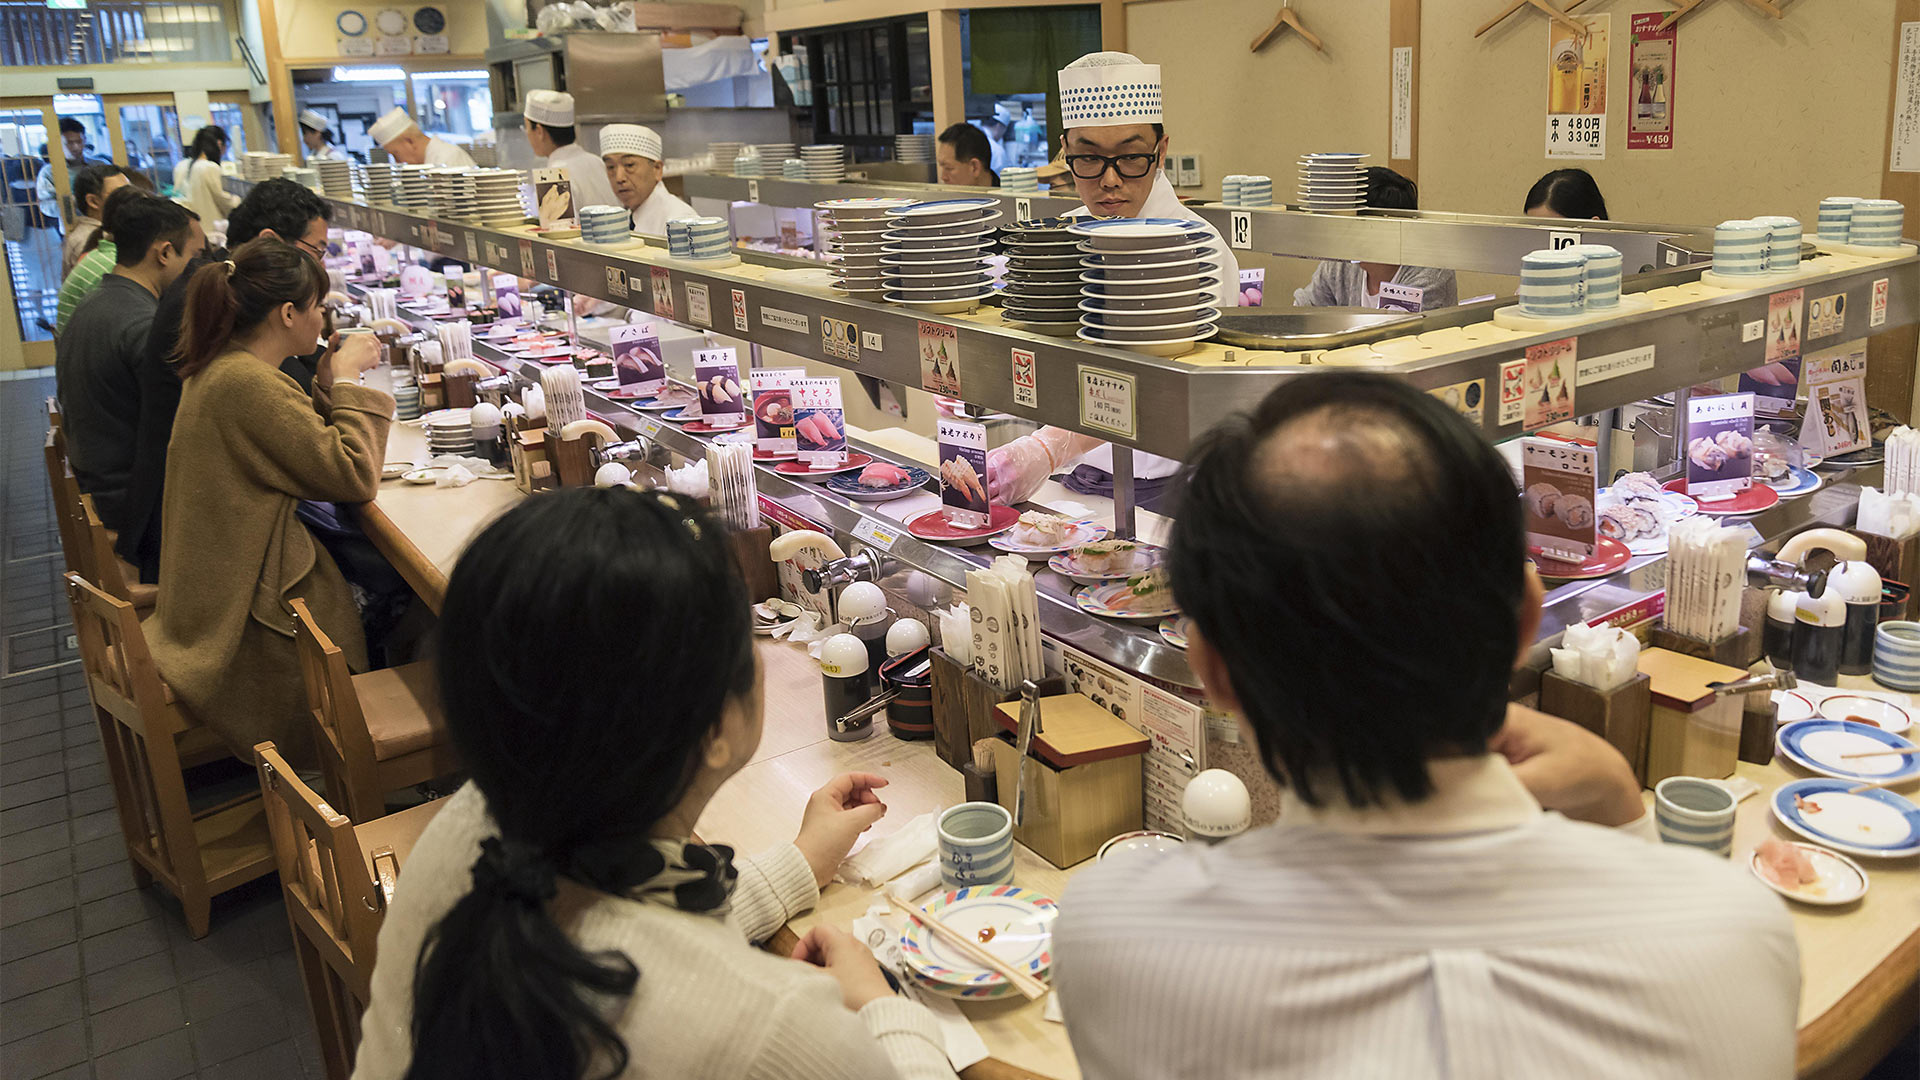 Kaiten-zushi Restaurant mit Sushi auf rotierenden Förderband, Kyoto, Japan | picture alliance / imageBROKER